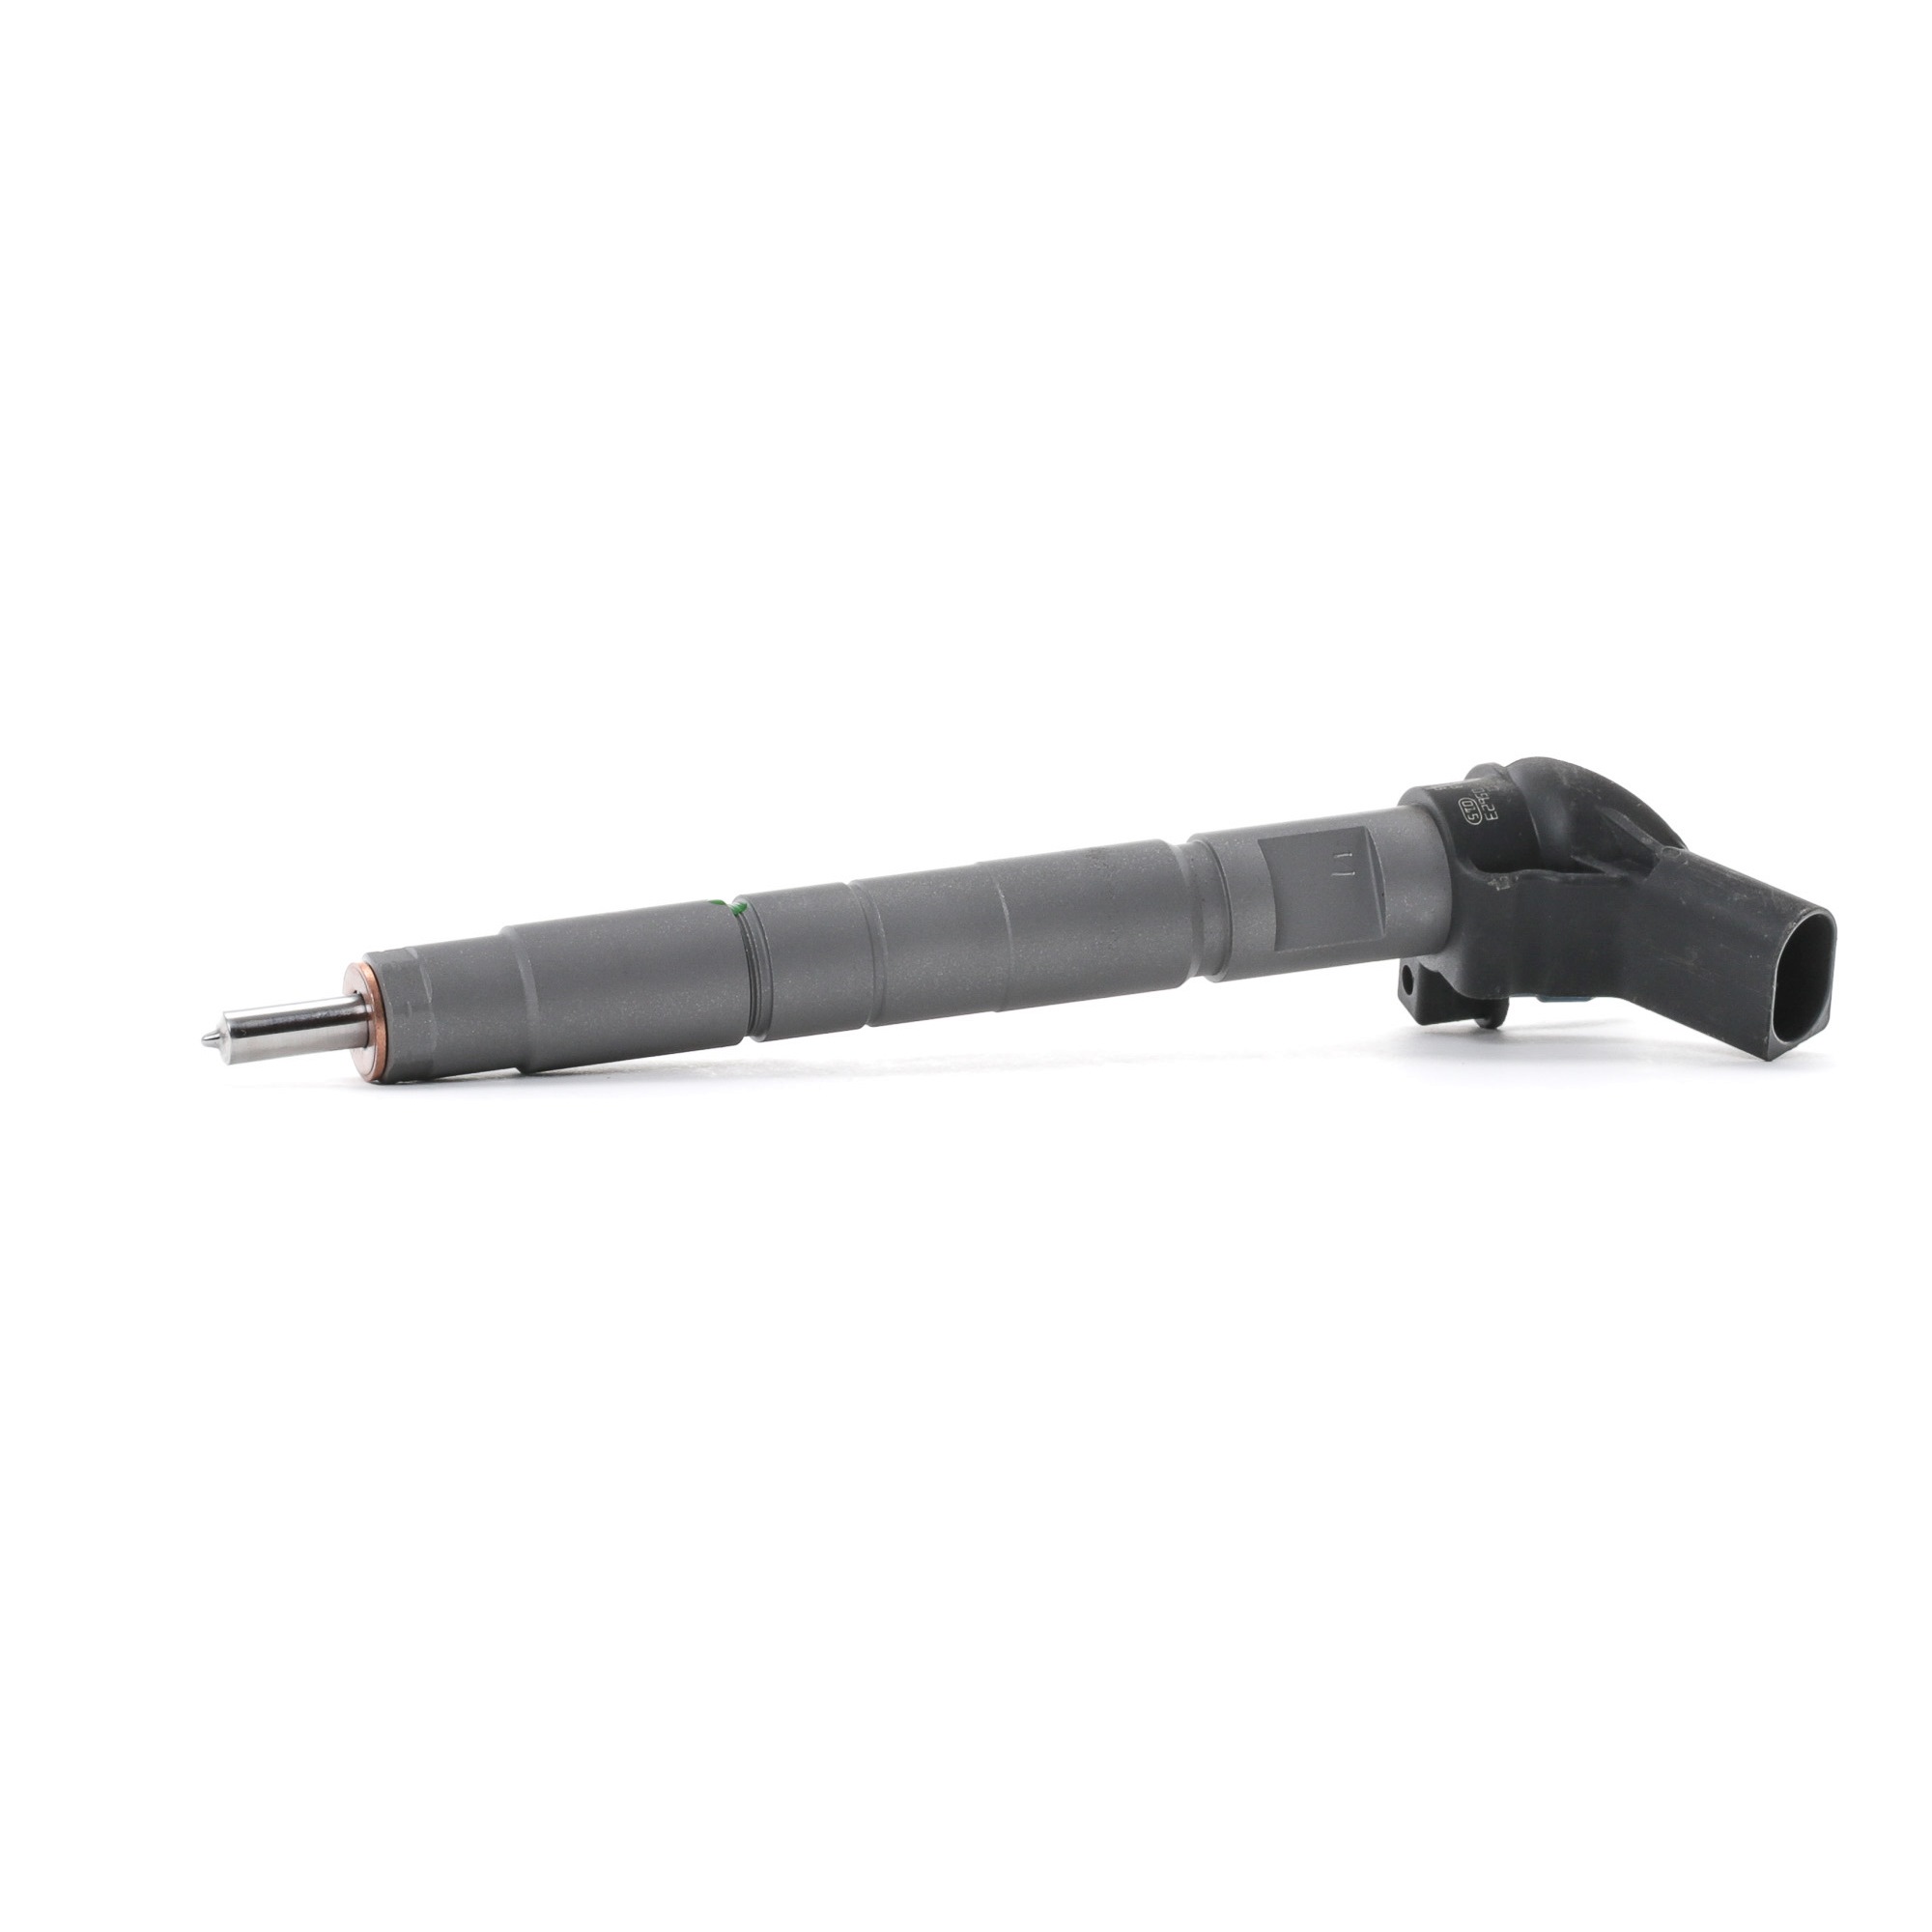 Hyundai Injector Nozzle RIDEX REMAN 3902I0154R at a good price